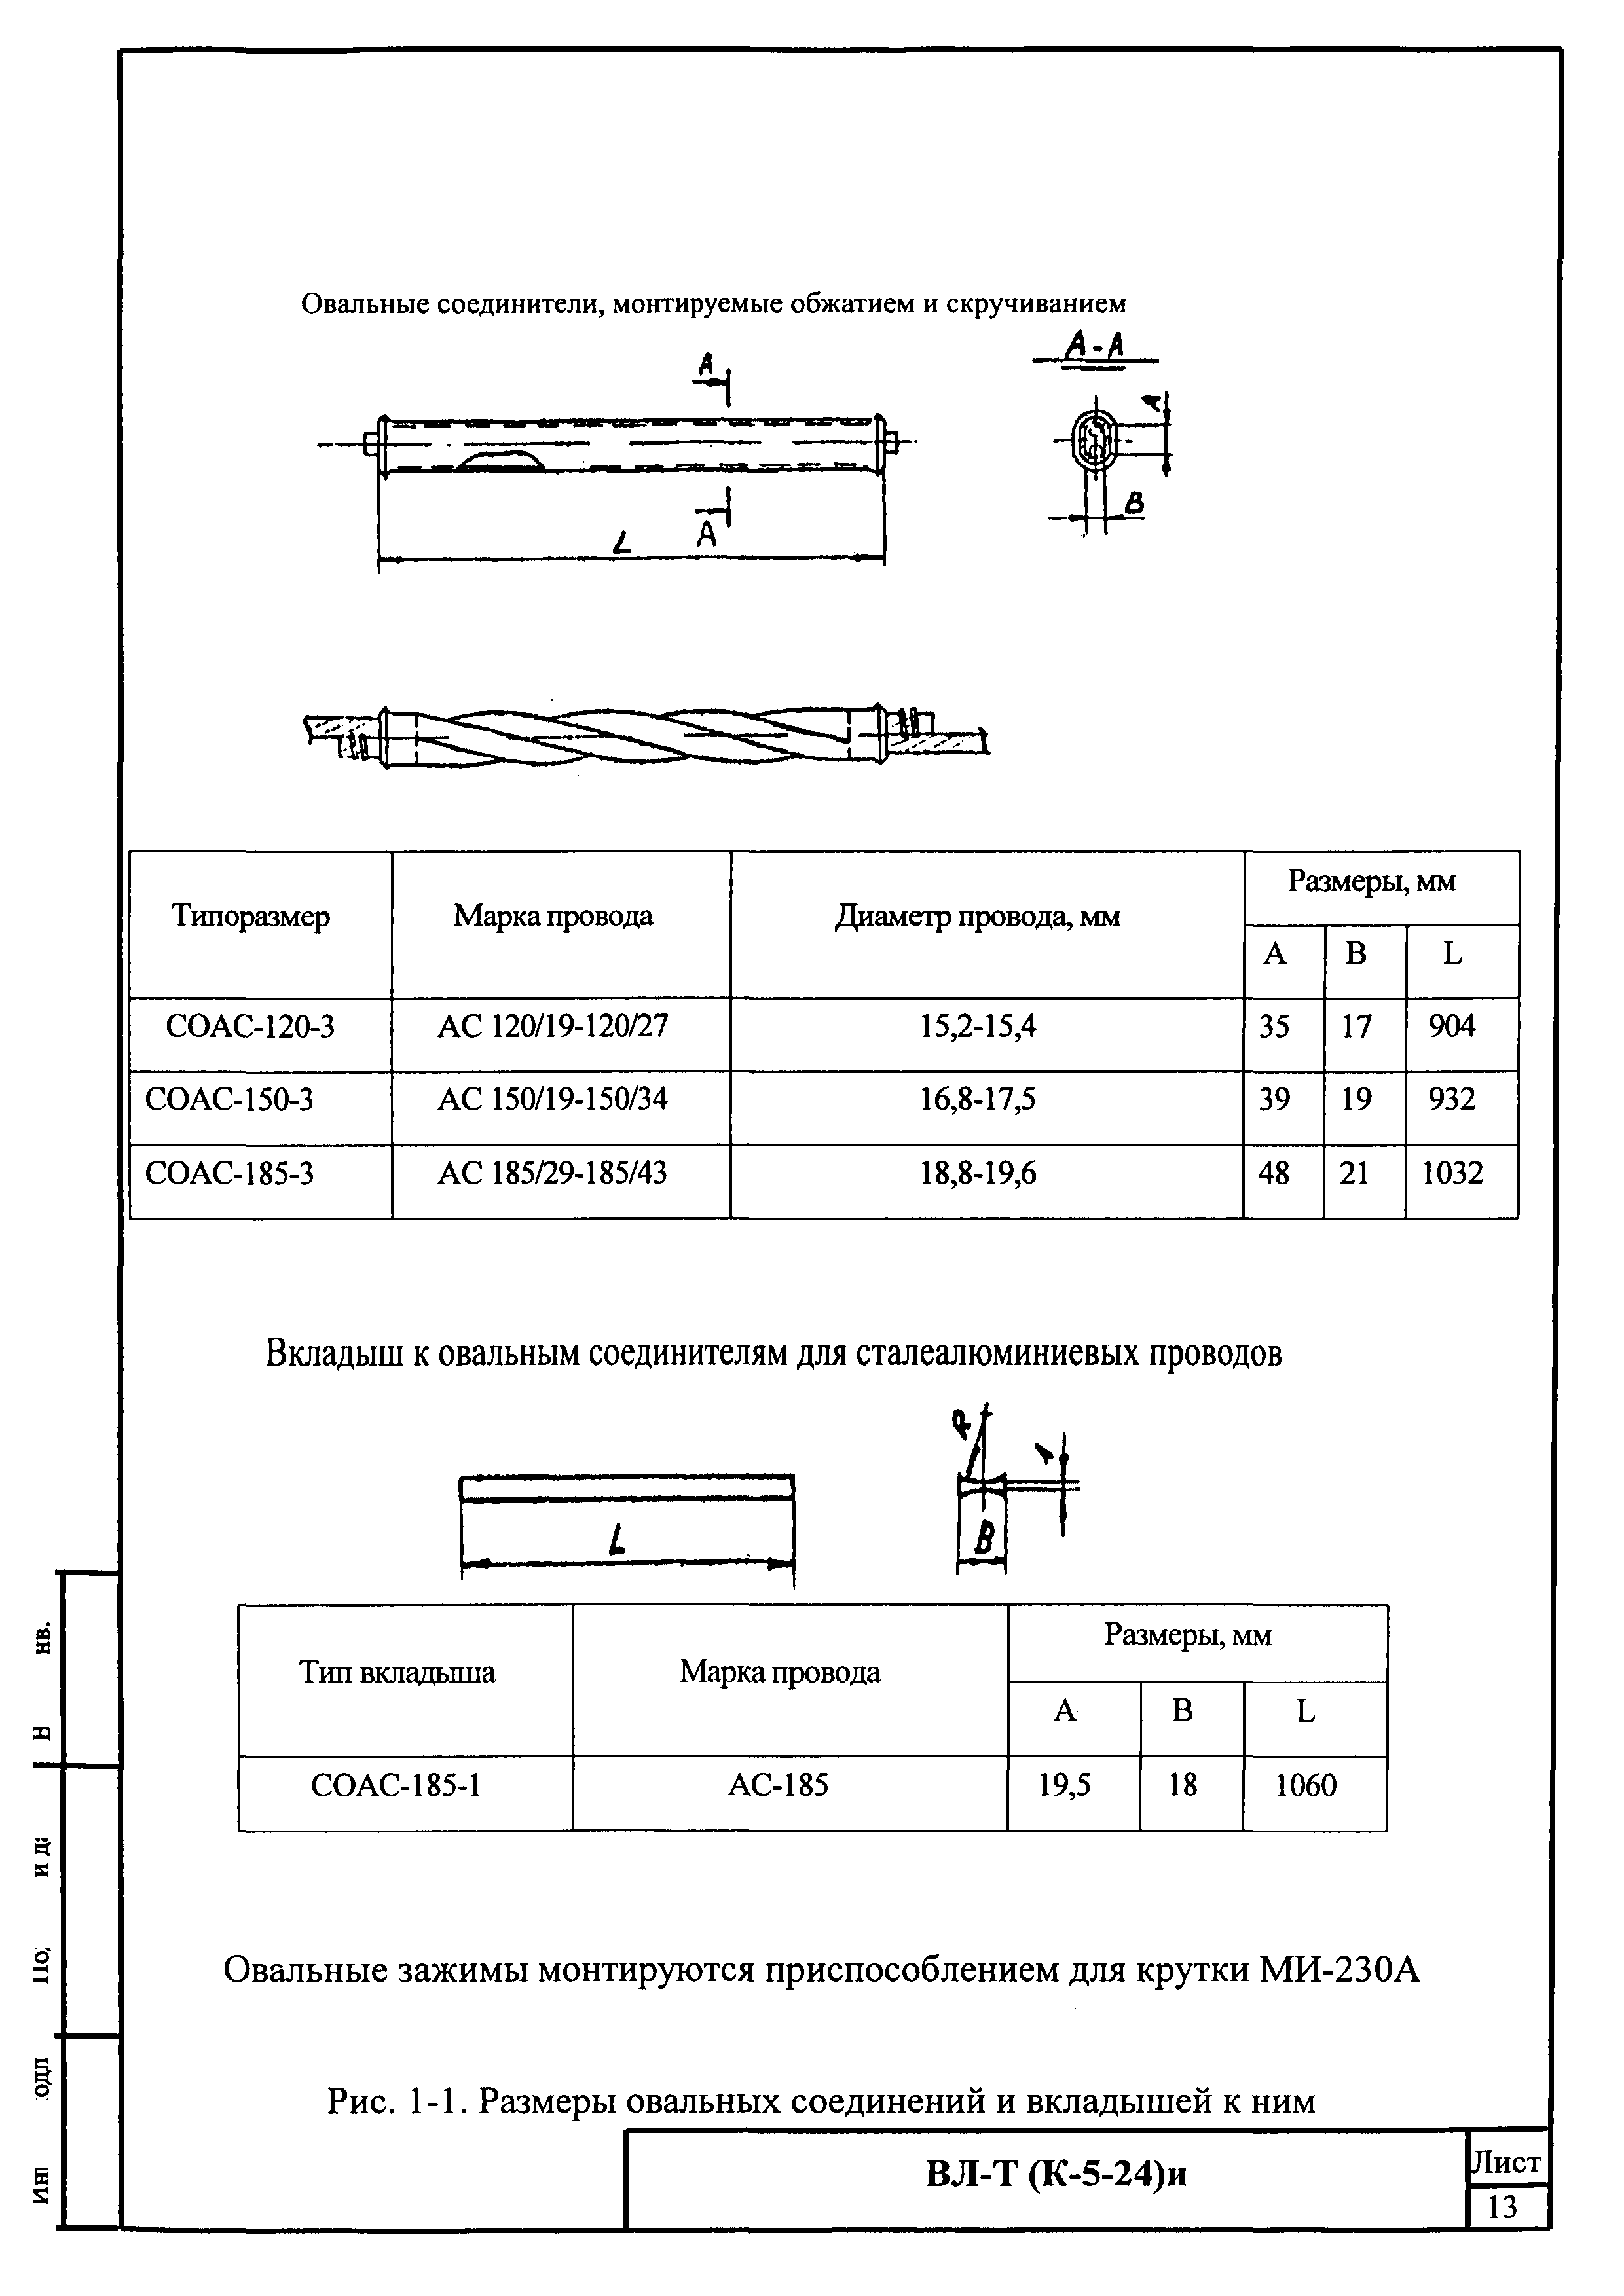 Технологическая карта К-5-24-1и